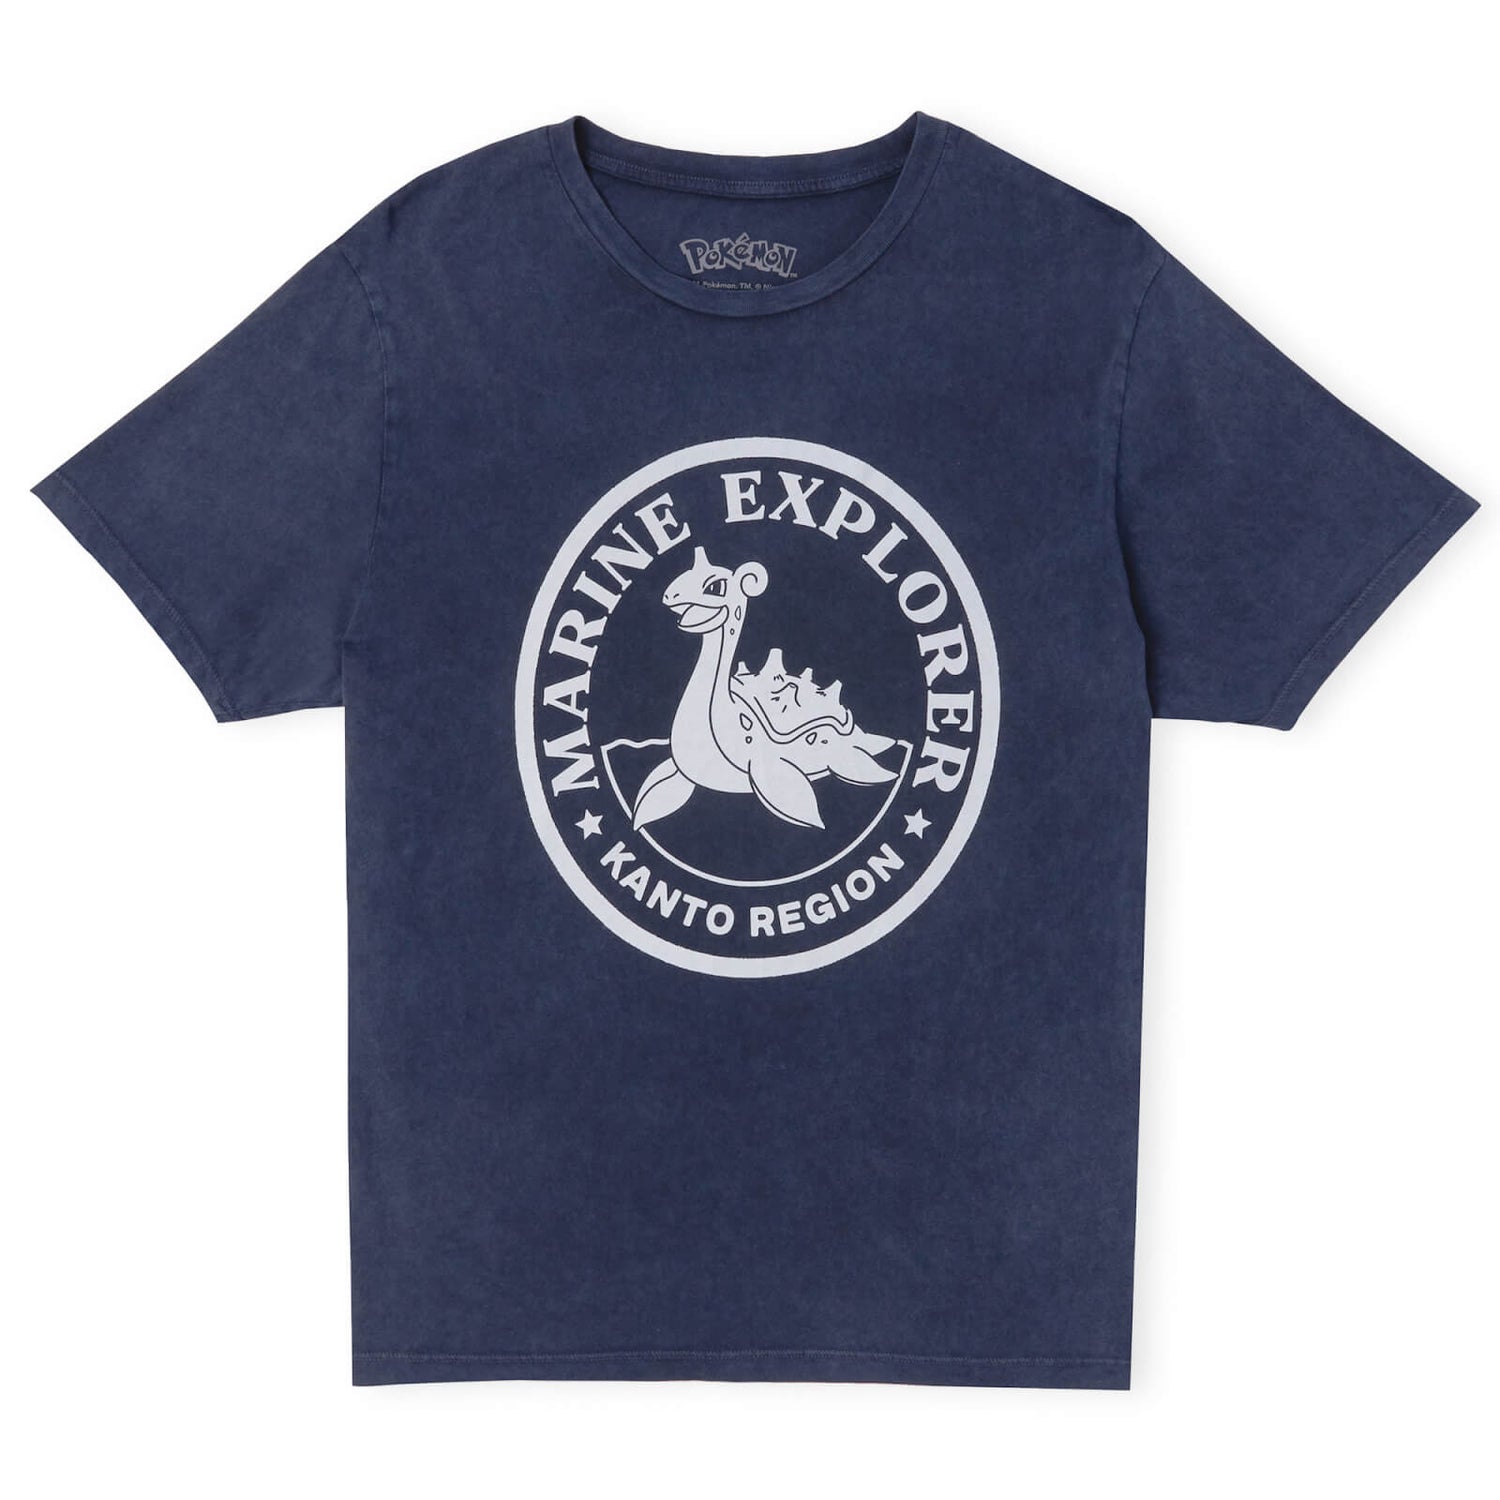 Camiseta unisex Pokémon Marine Explorer - Azul marino Acid Wash